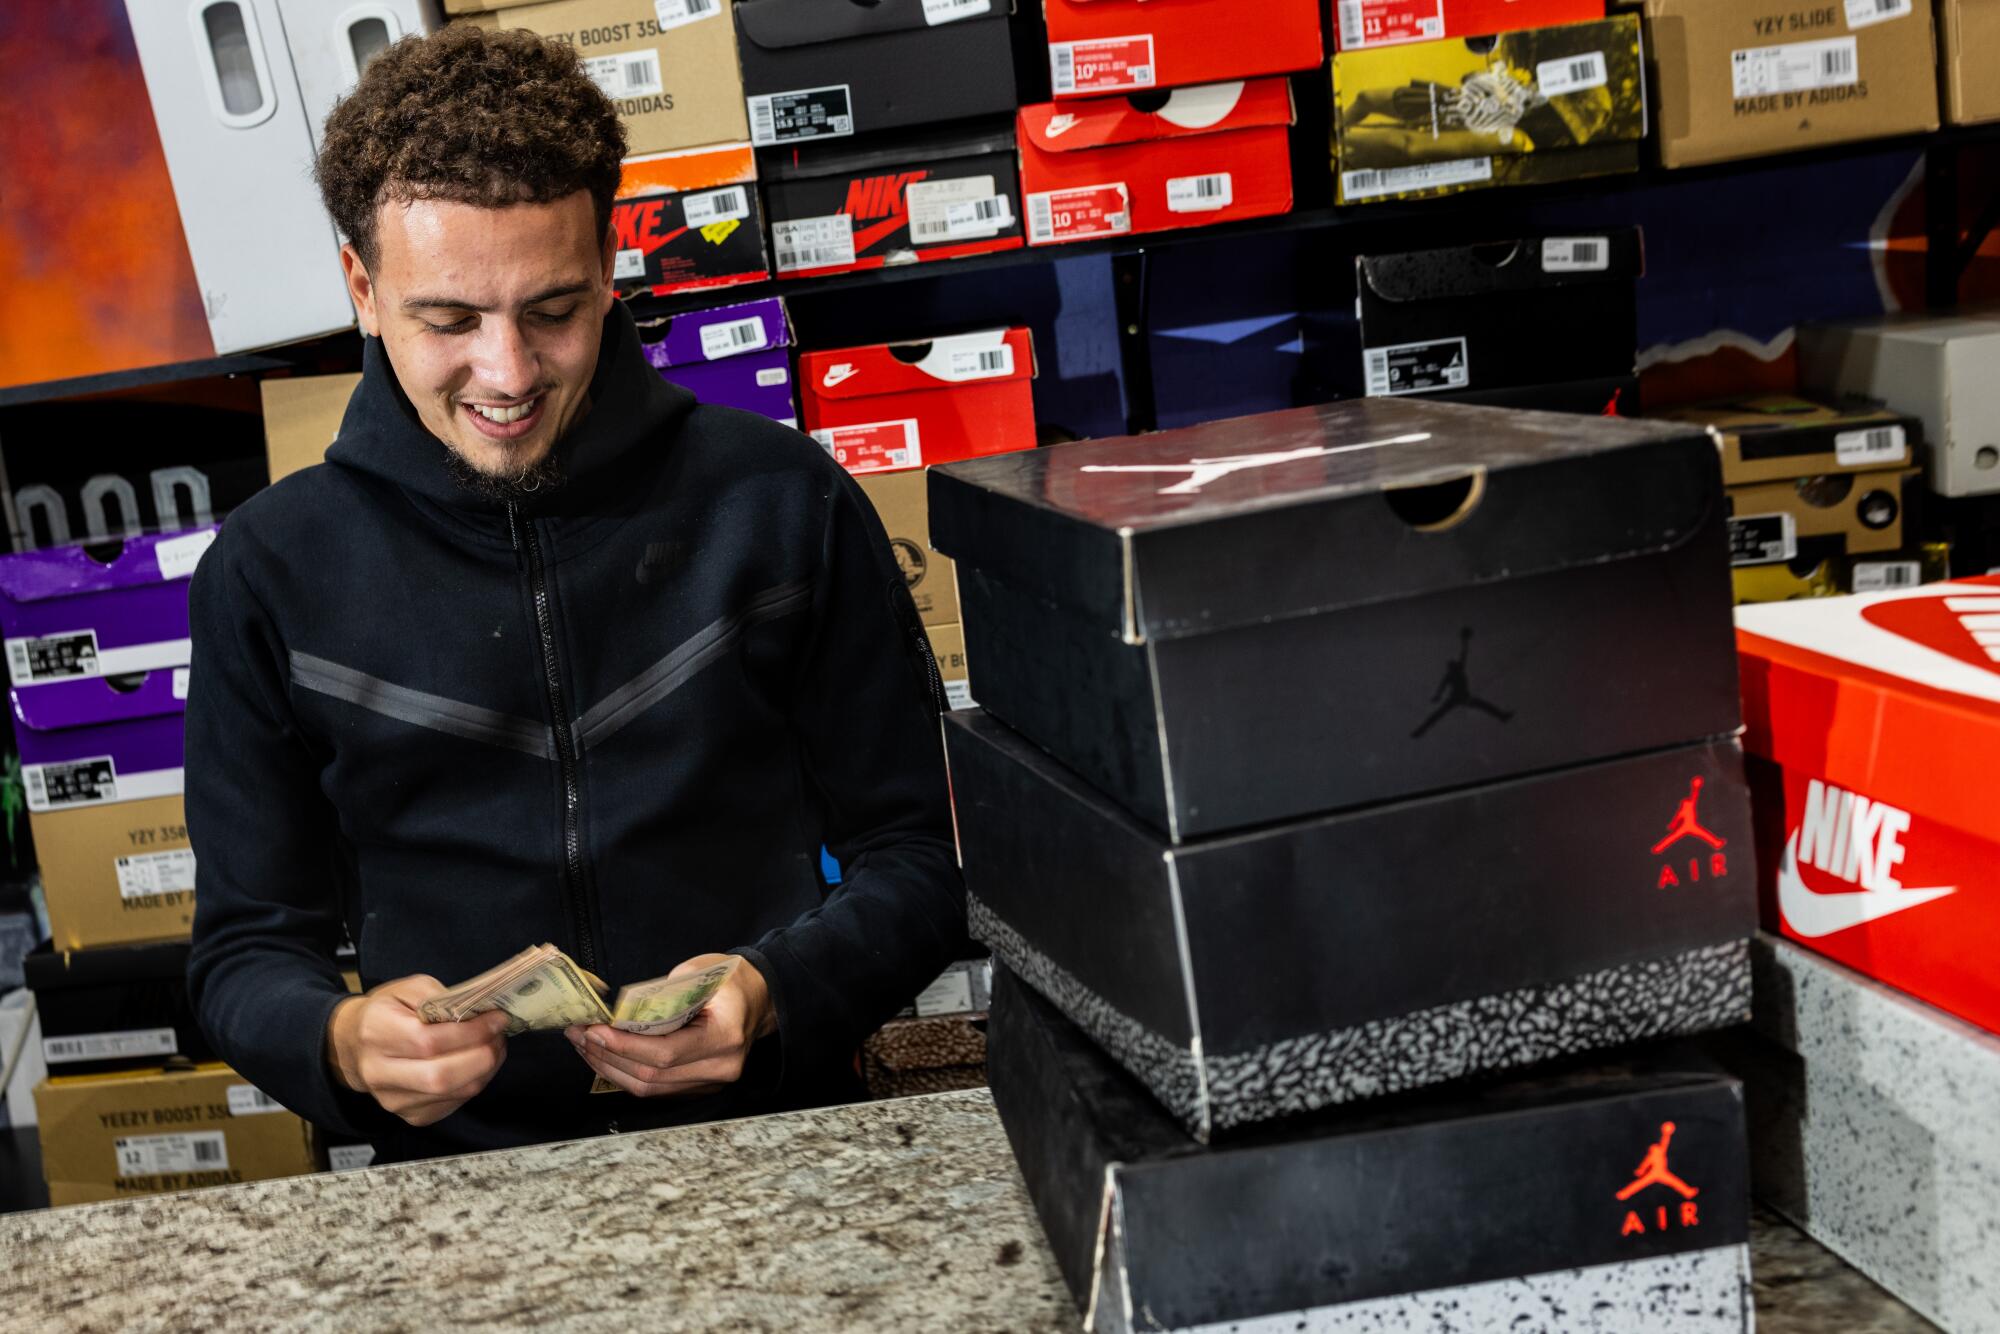 A man at a shoe store counts cash